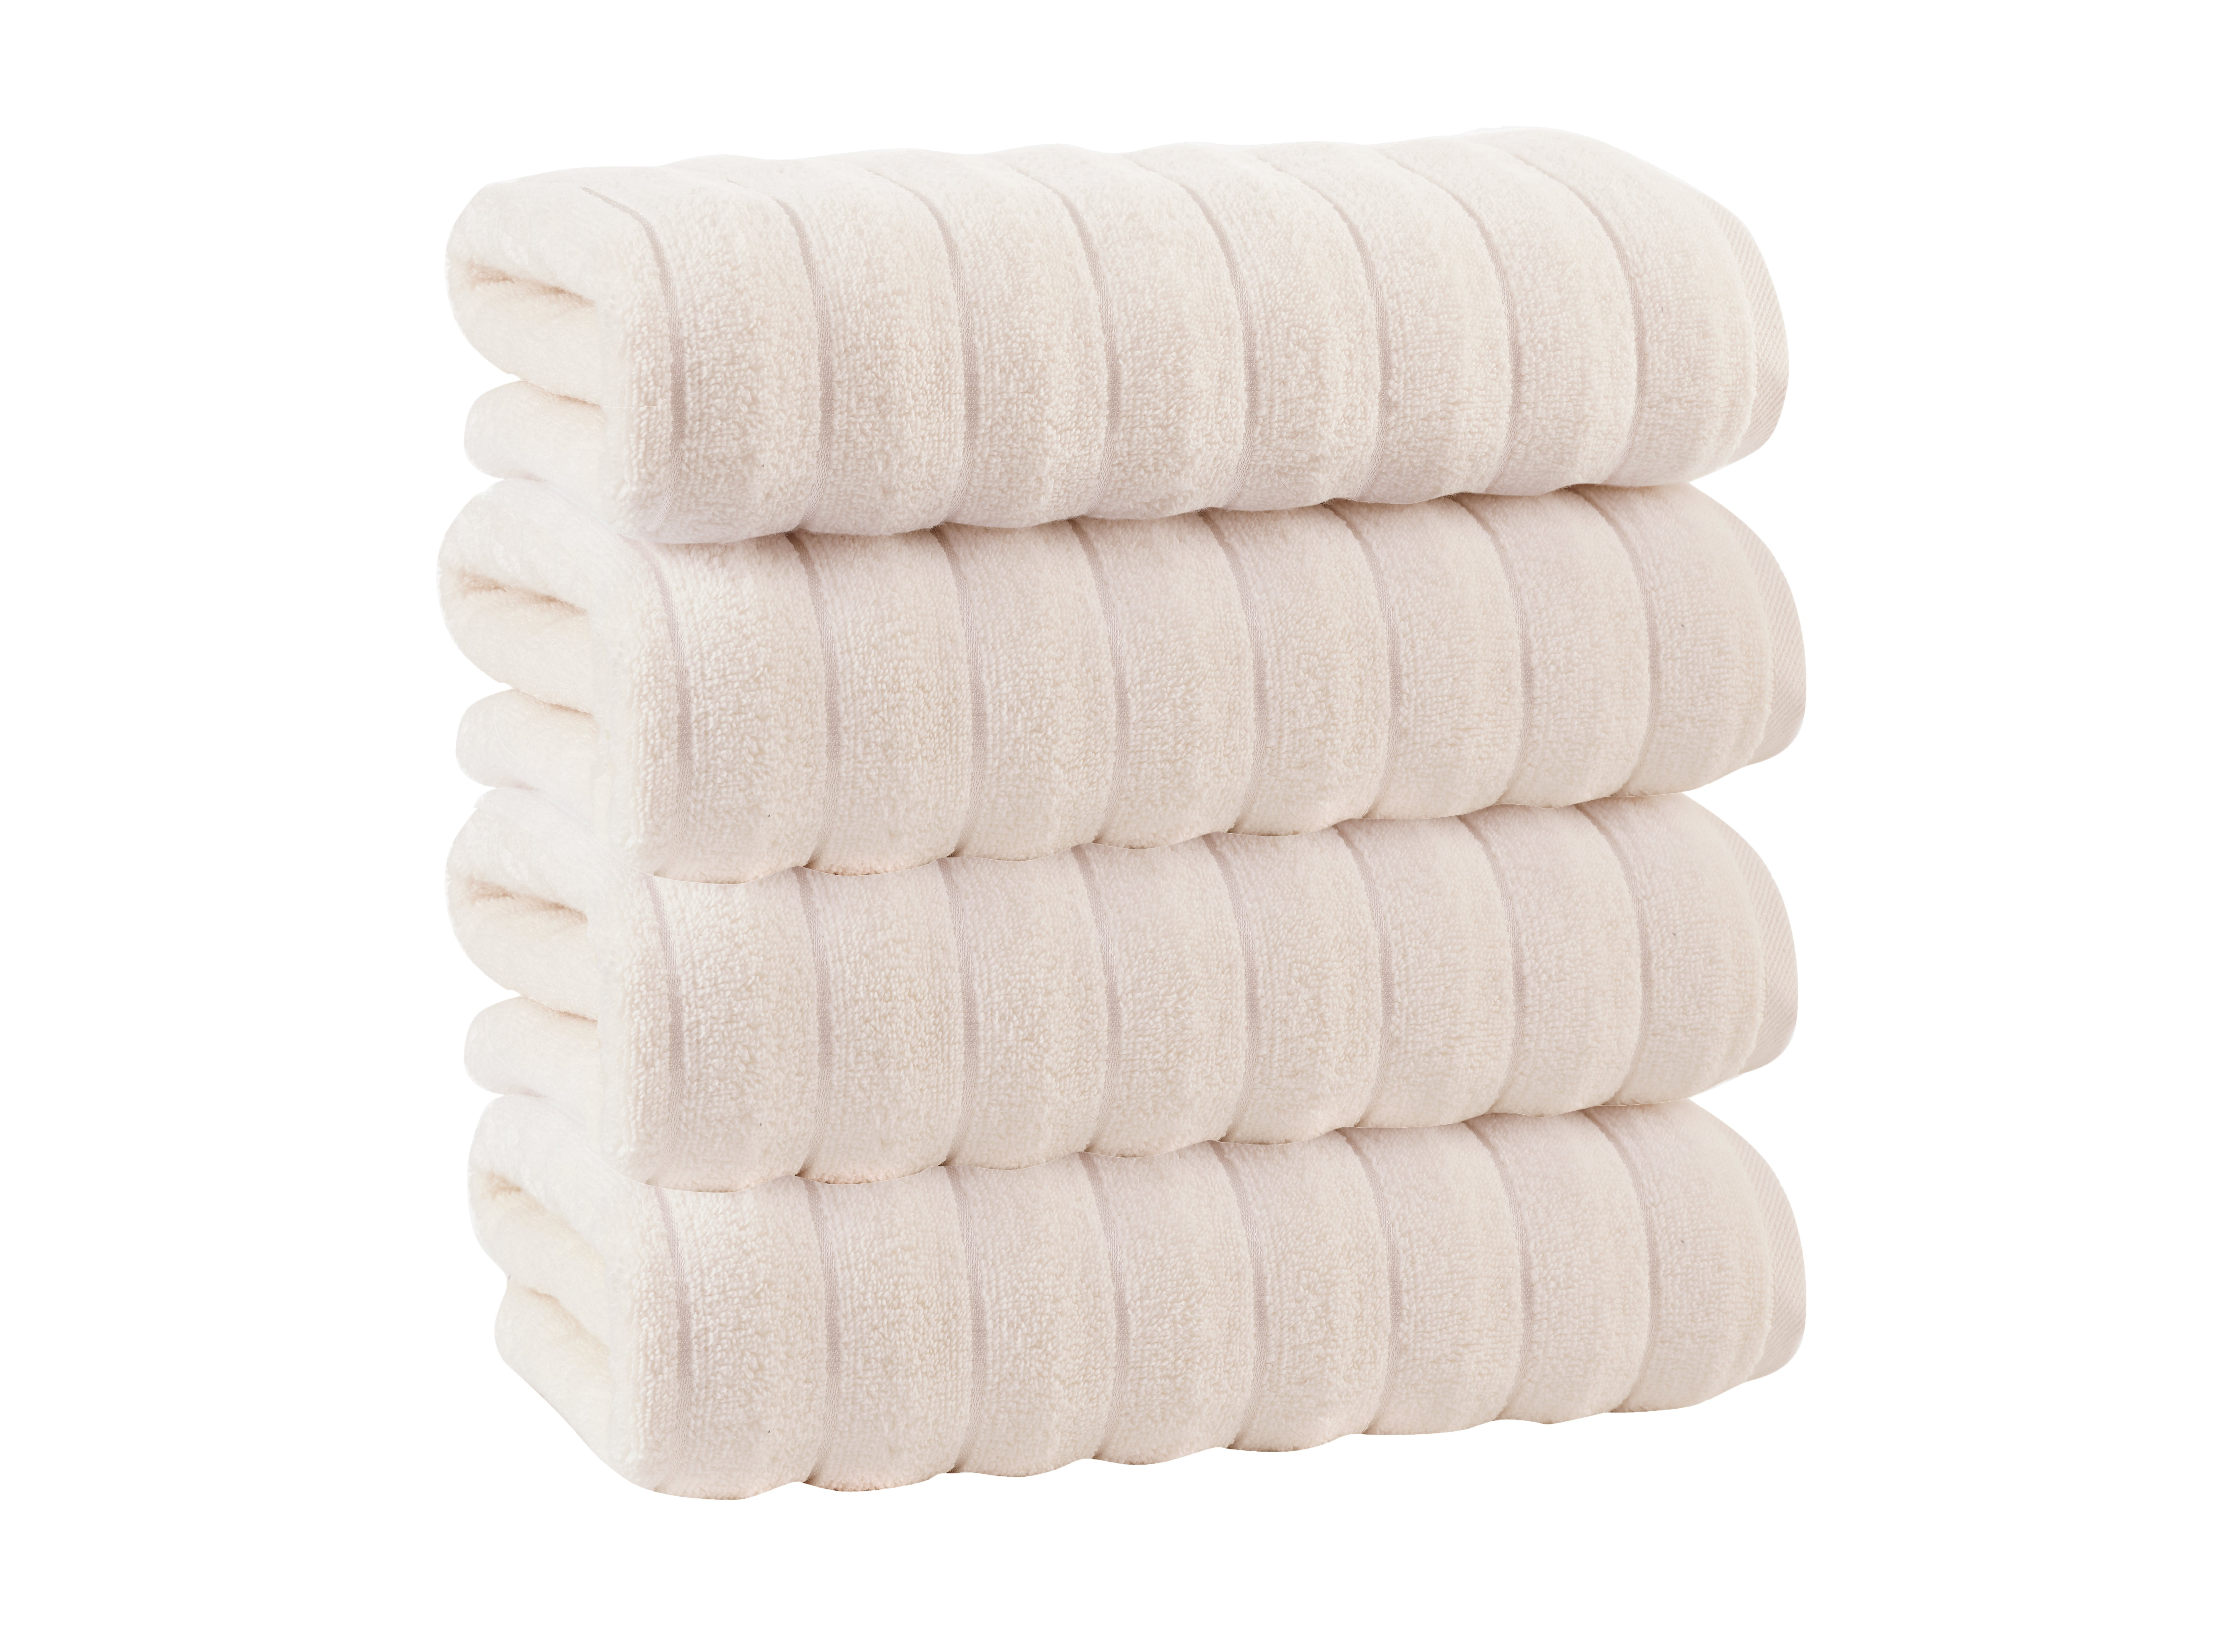 Enchante Home 4-Piece White Turkish Cotton Bath Towel Set (Vague